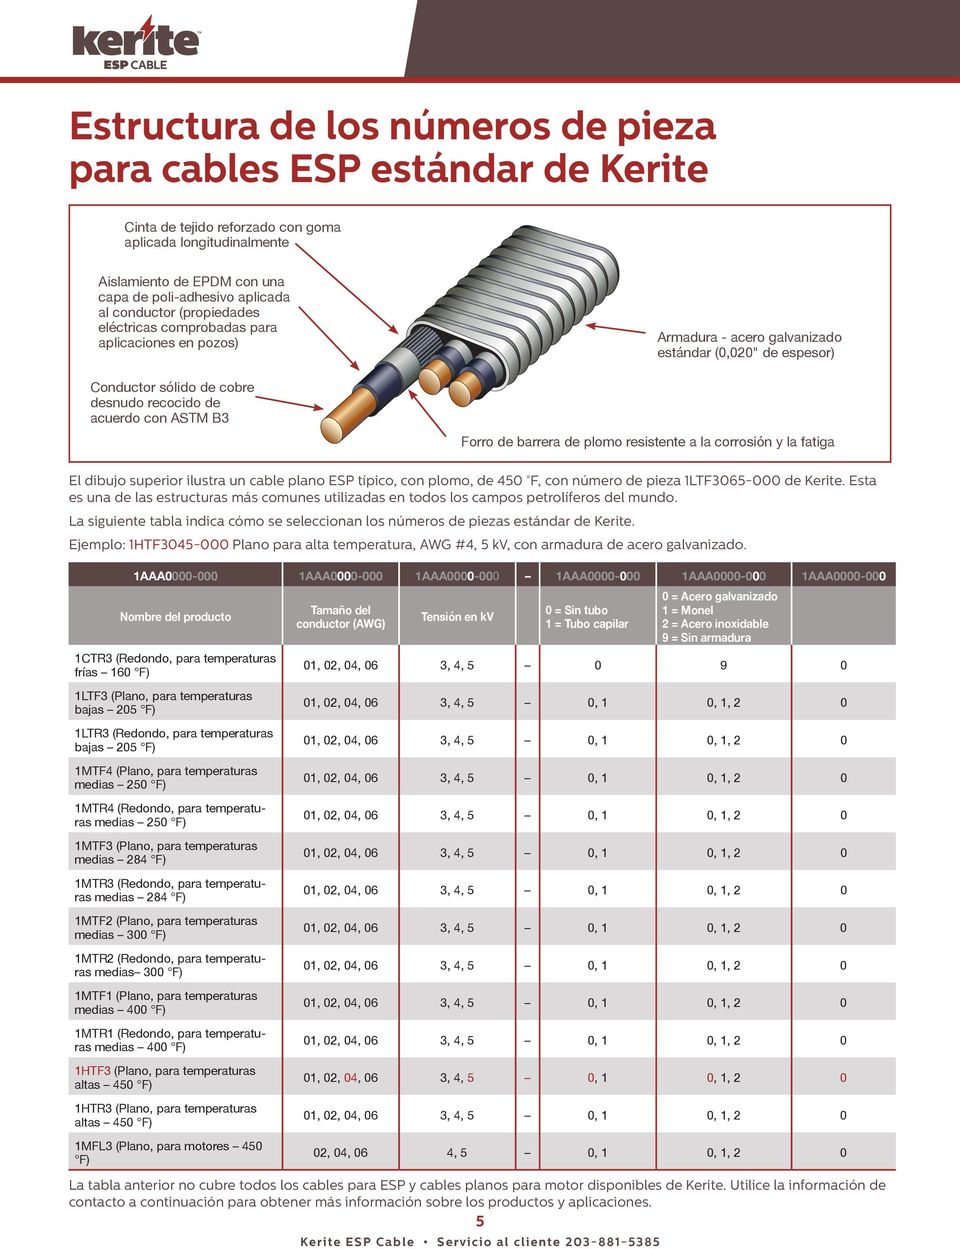 barrera de plomo resistente a la corrosión y la fatiga El dibujo superior ilustra un cable plano ESP típico, con plomo, de 45 F, con número de pieza 1LTF365- de Kerite.